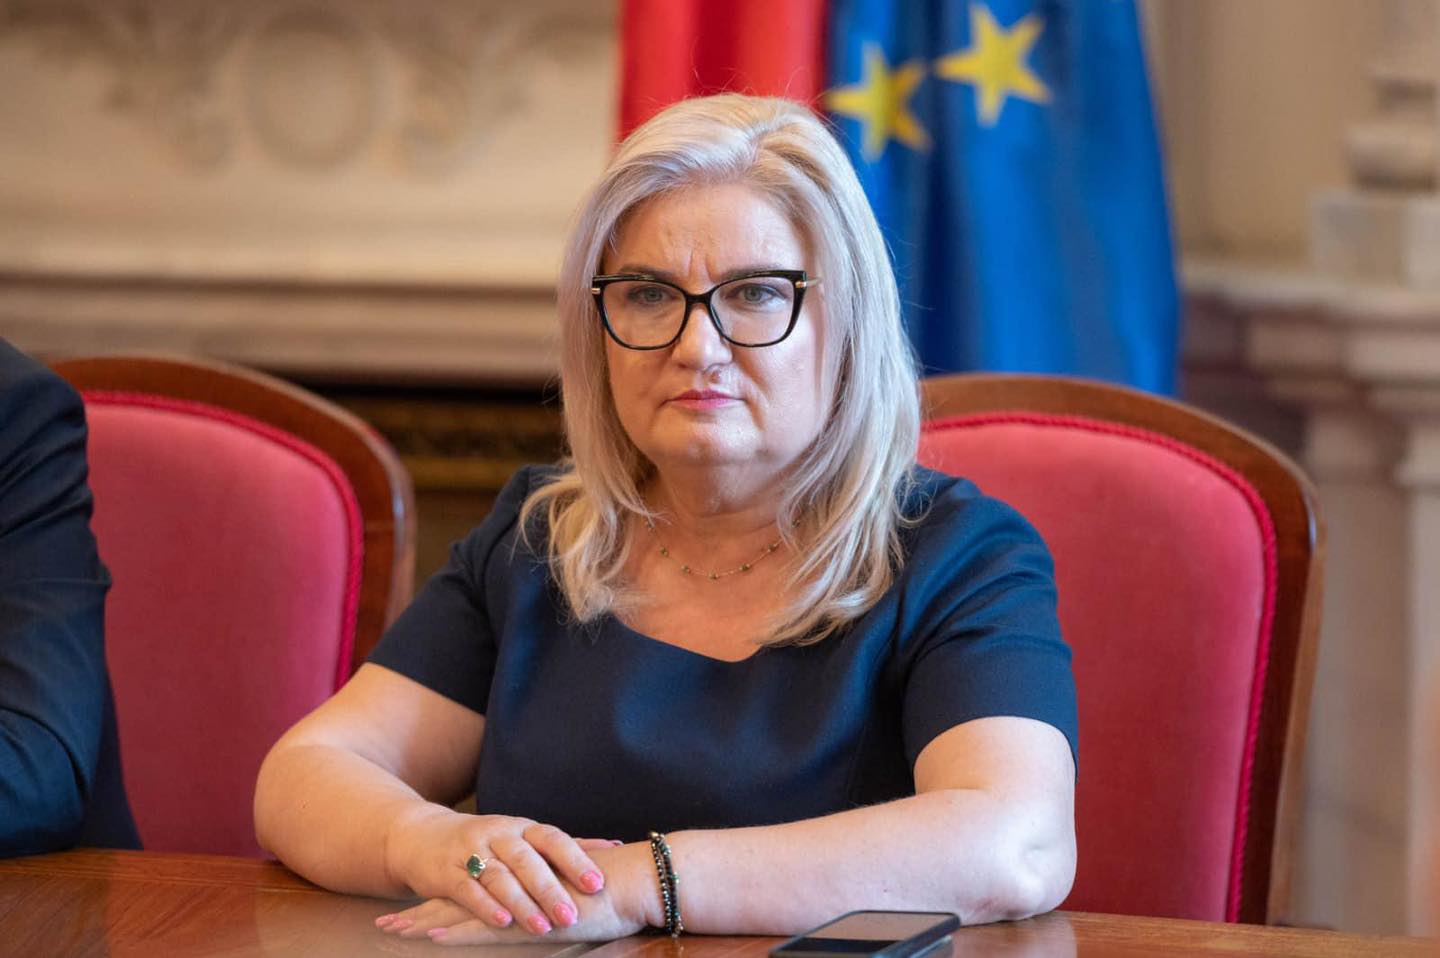 Siminica Mirea, senator de Olt: “Rămânem concentrați pe agenda cetățeanului și pe realizarea reformelor, evitând implicarea în orgolii politice sau scandaluri inutile”.